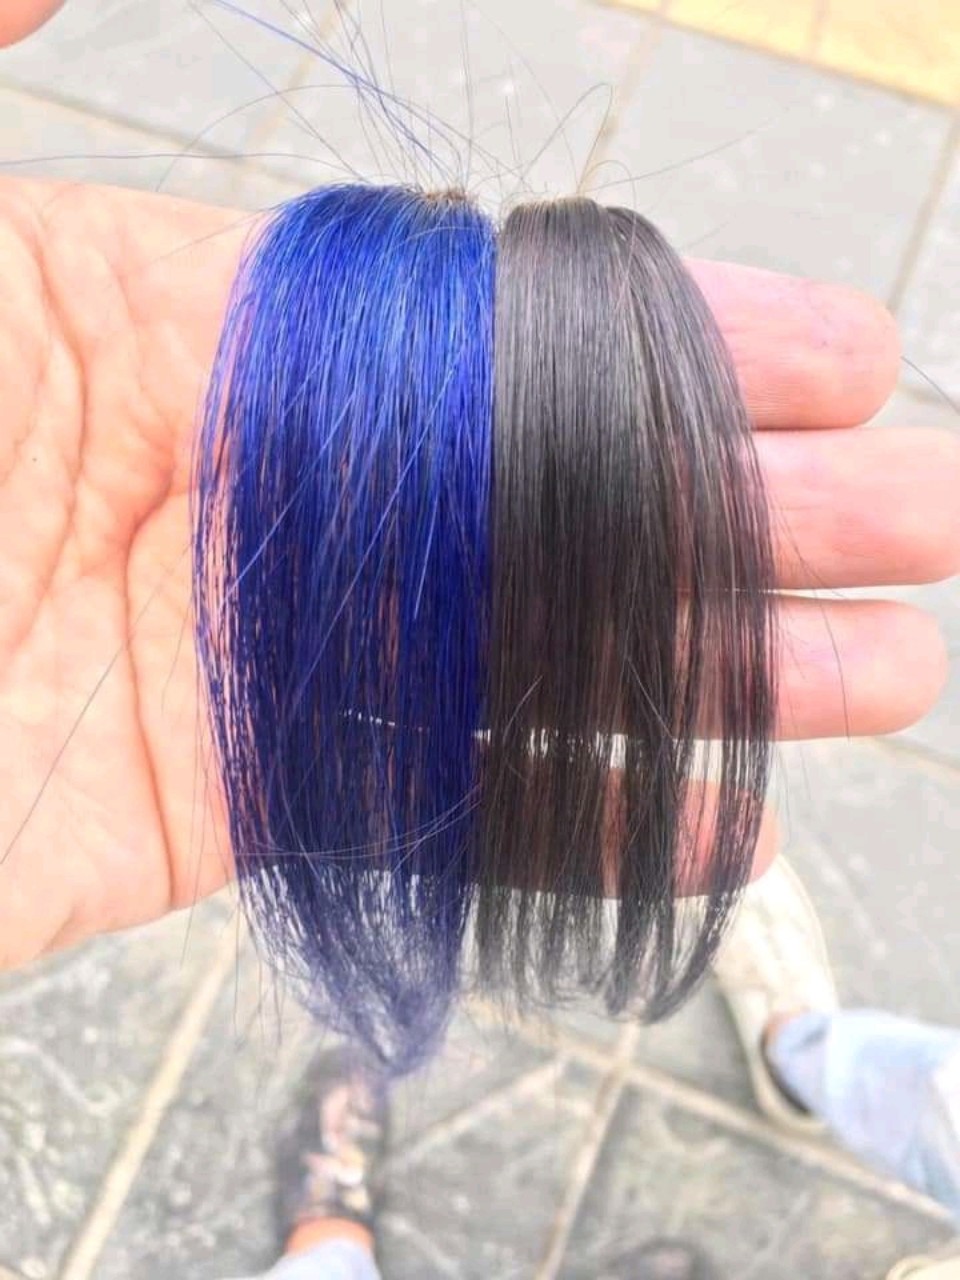 Phủ bóng xanh: Bạn muốn tóc của mình trở nên quyến rũ và phong cách hơn? Hãy nhuộm tóc với phủ bóng xanh. Bộ tóc này sẽ khiến bạn trông thật trẻ trung, tươi tắn và đầy sức sống.